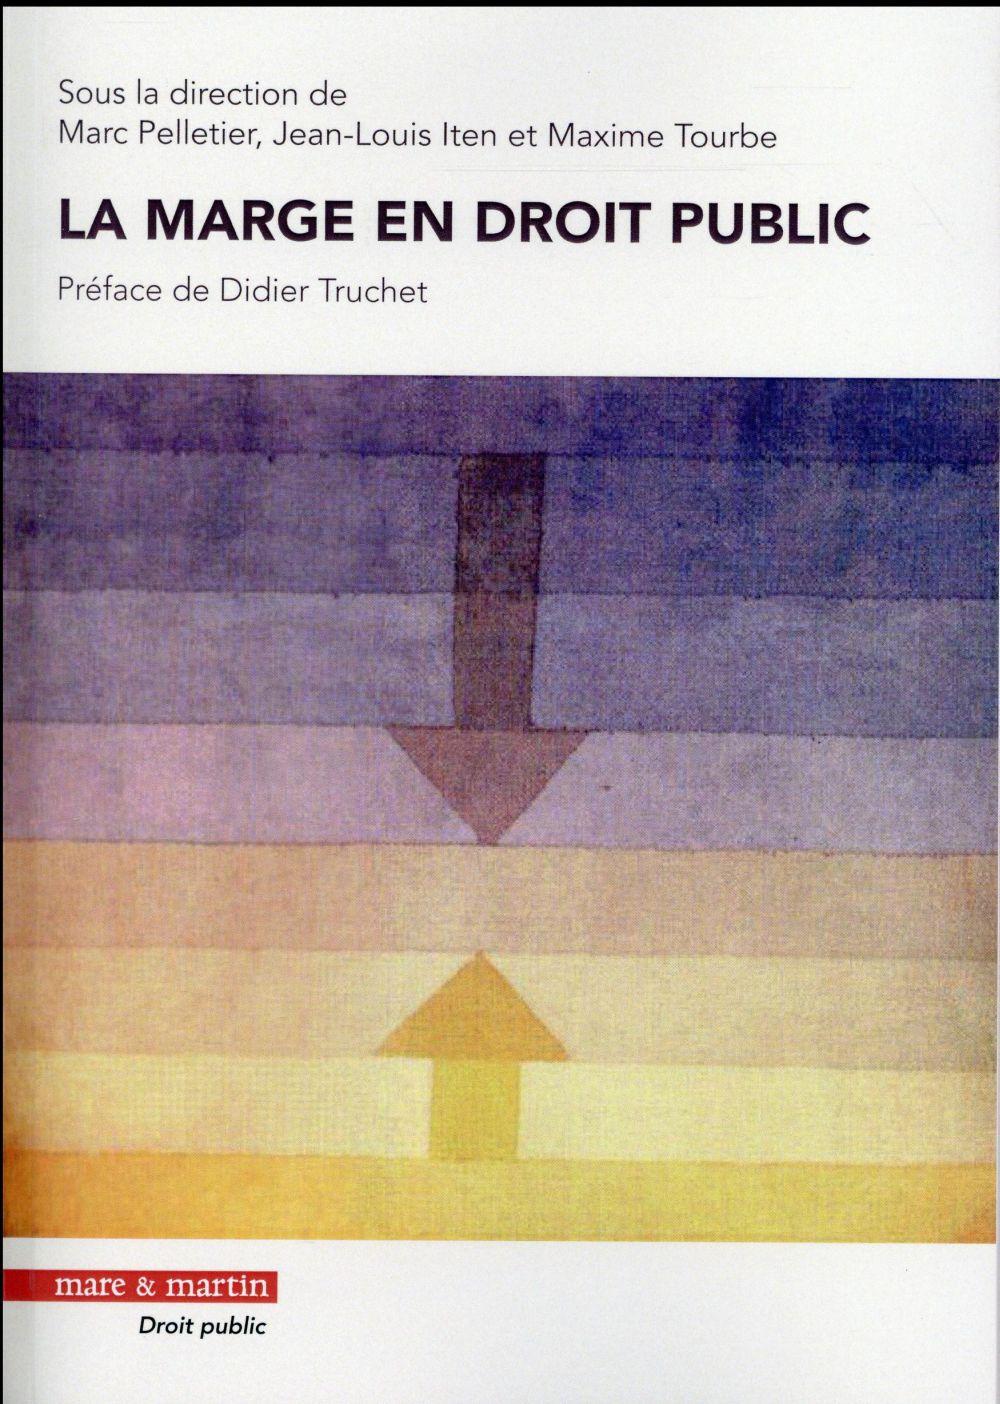 La marge en droit public  - Maxime Tourbe  - Marc Pelletier  - Jean-Louis Iten  